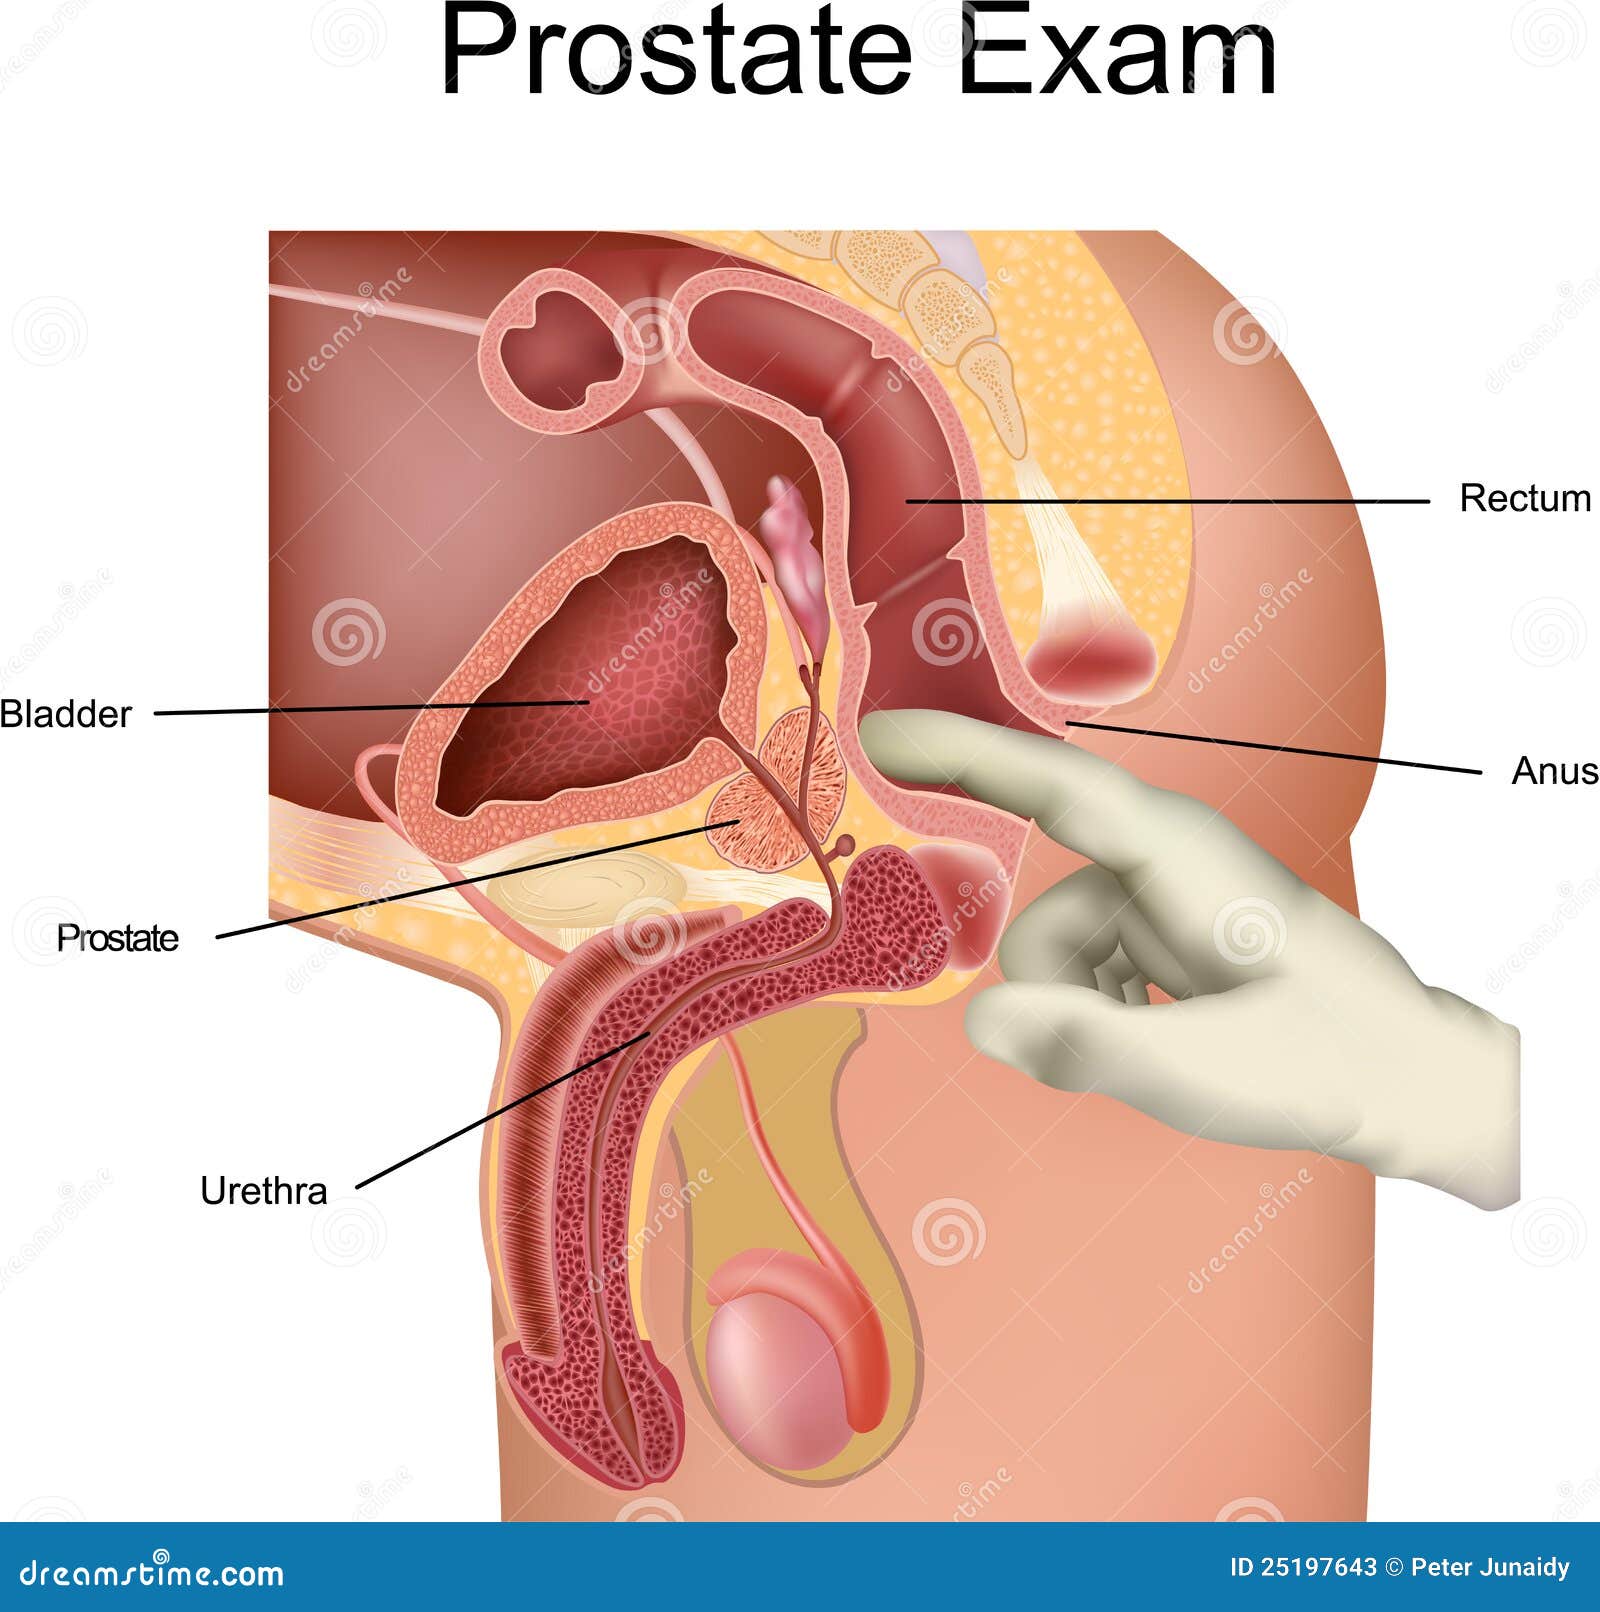 sindromul durerii pelvine cu prostatită exerciții pentru prostatită și adenom de prostată